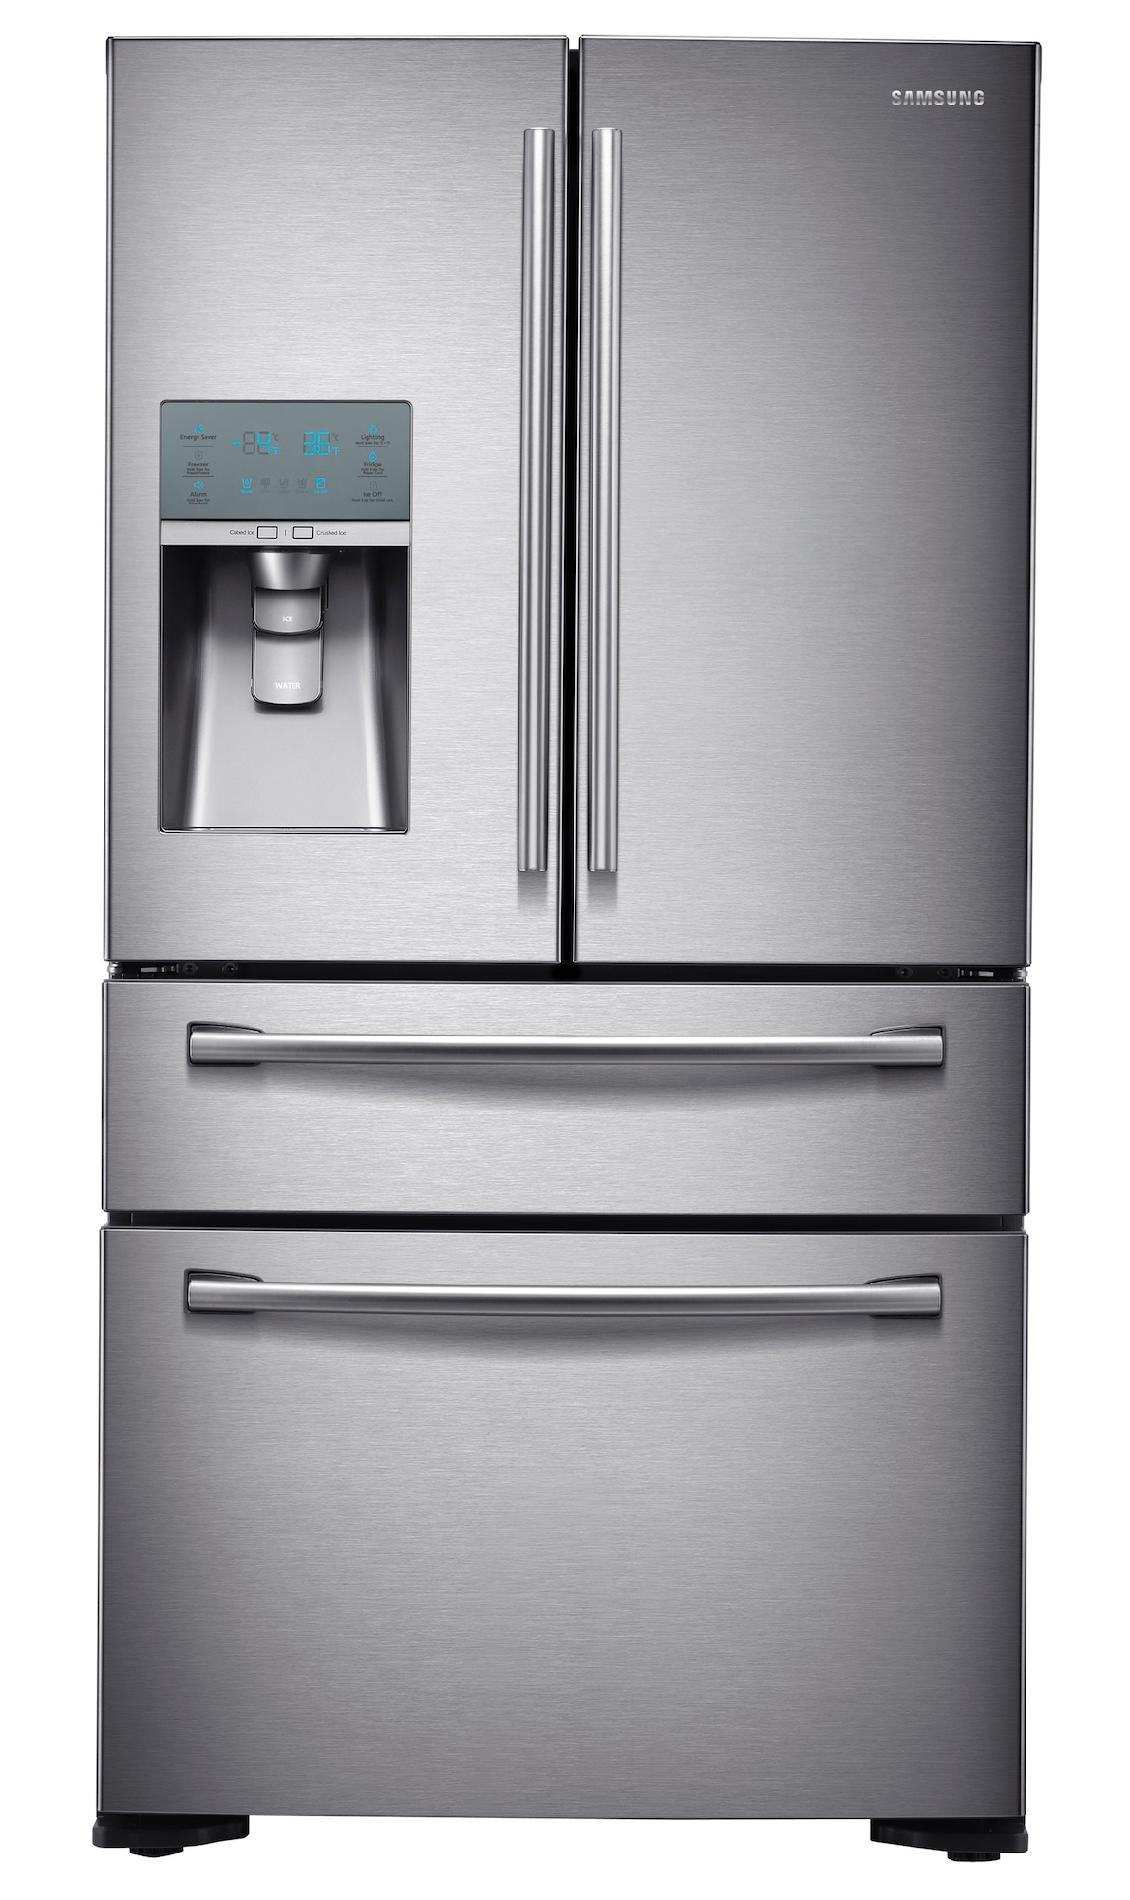 Samsung 24 cu. ft. Counter-Depth 4-Door Refrigerator w/ FlexZone Drawer - Stainless Steel